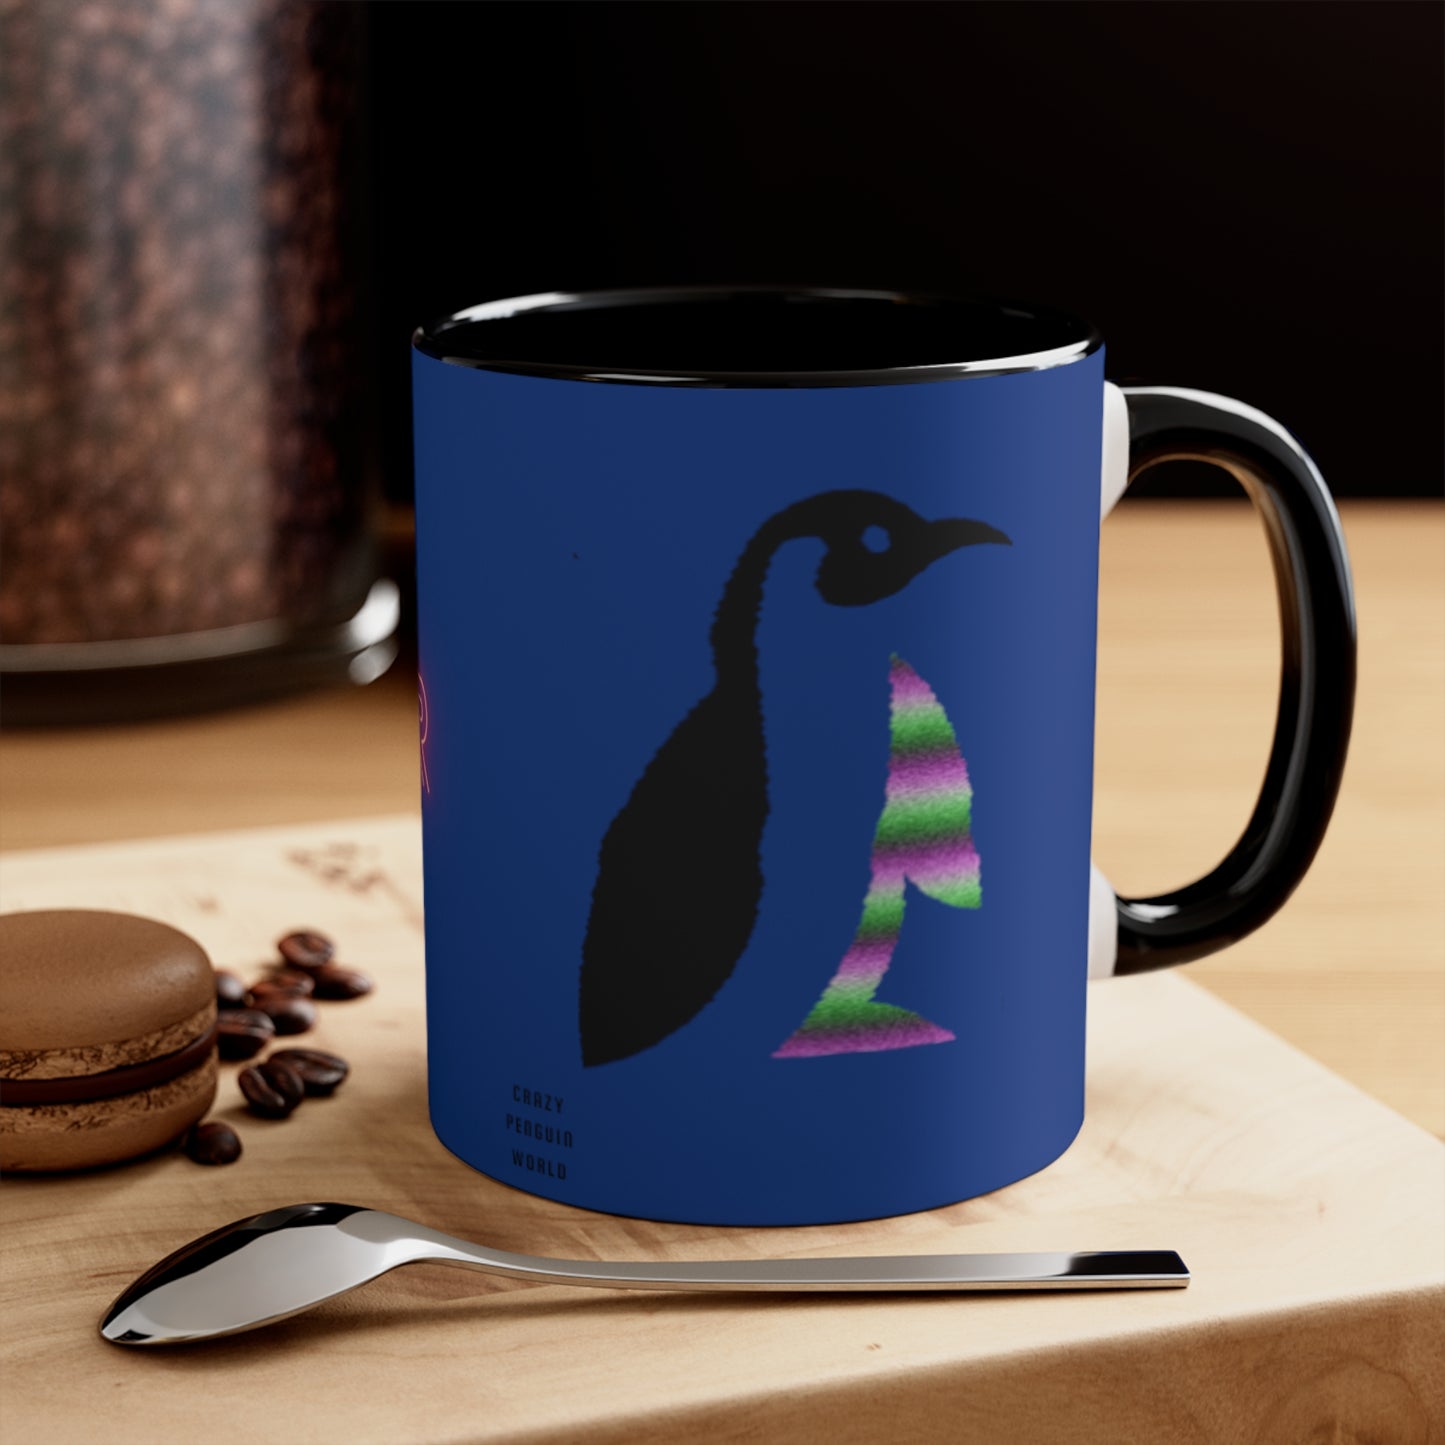 Accent Coffee Mug, 11oz: Crazy Penguin World Logo Dark Blue